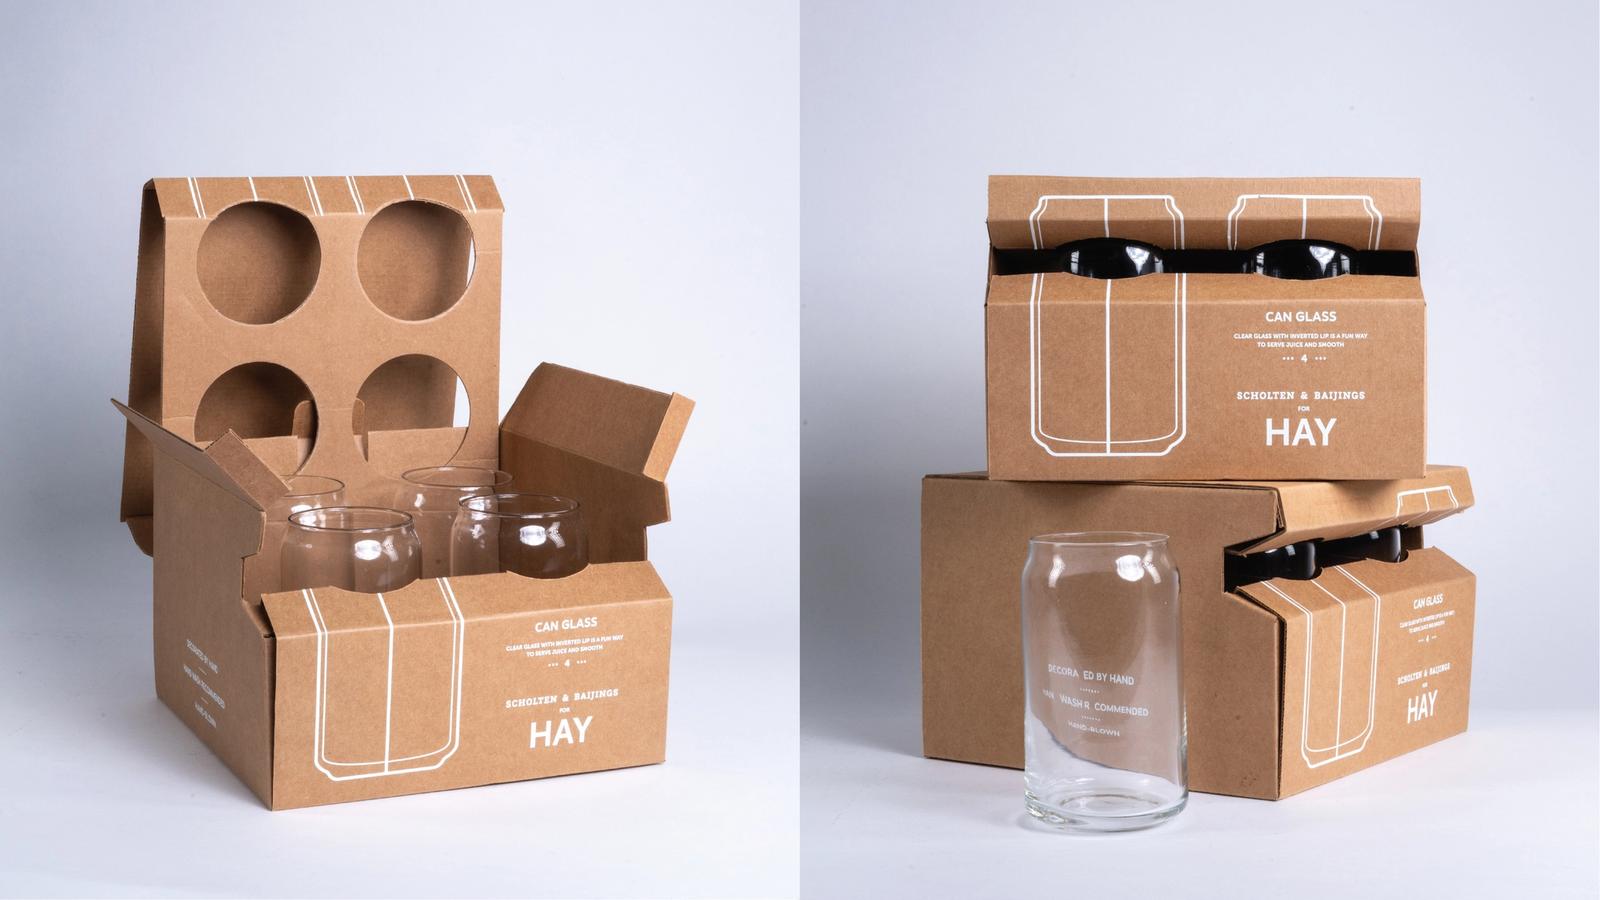 Hay glassware packaging